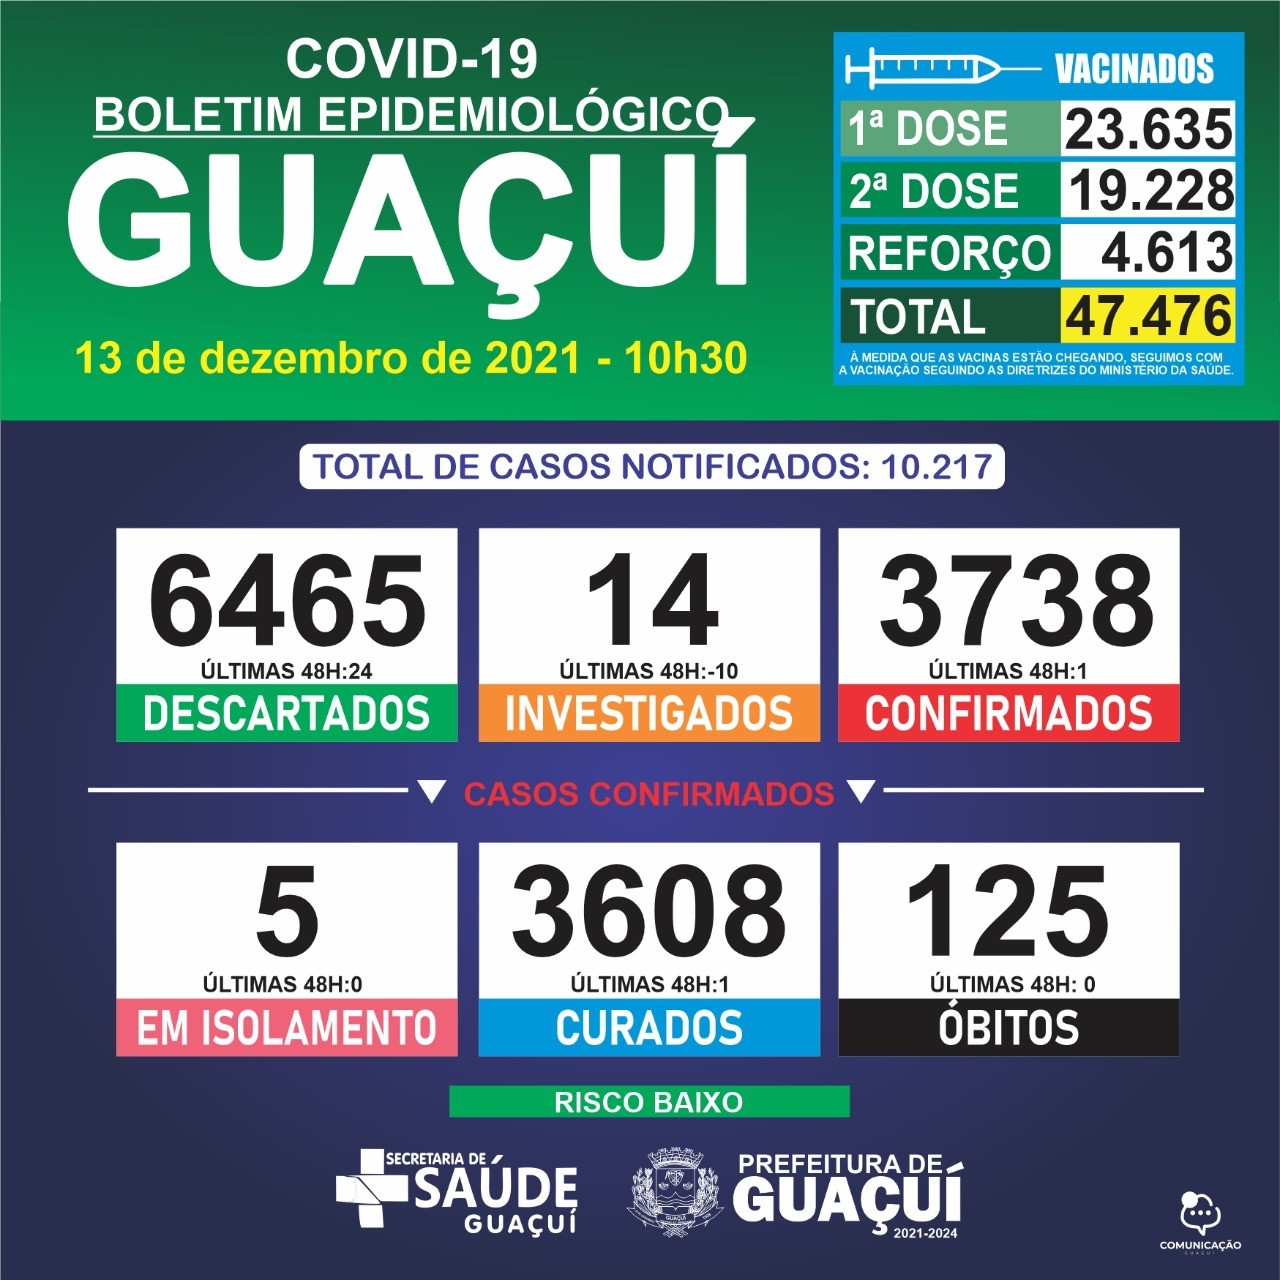 Boletim Epidemiológico 13/12/2021: Guaçuí registra 01 caso confirmado e 01 curado nas últimas 48 horas